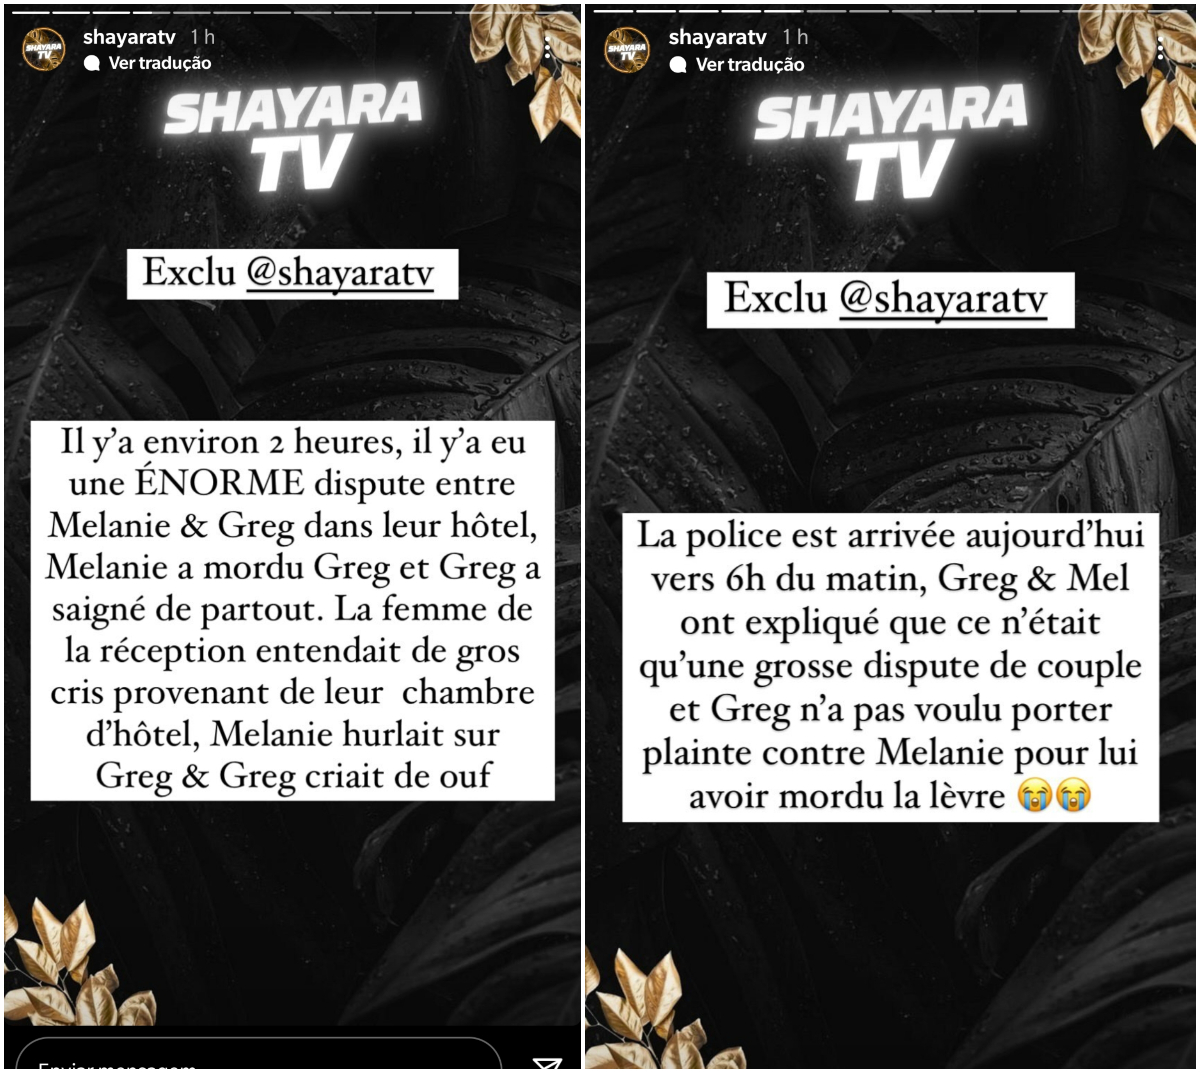  Les révélations de ShayaraTV sur Greg Yega et Mélanie ORL @Instagram